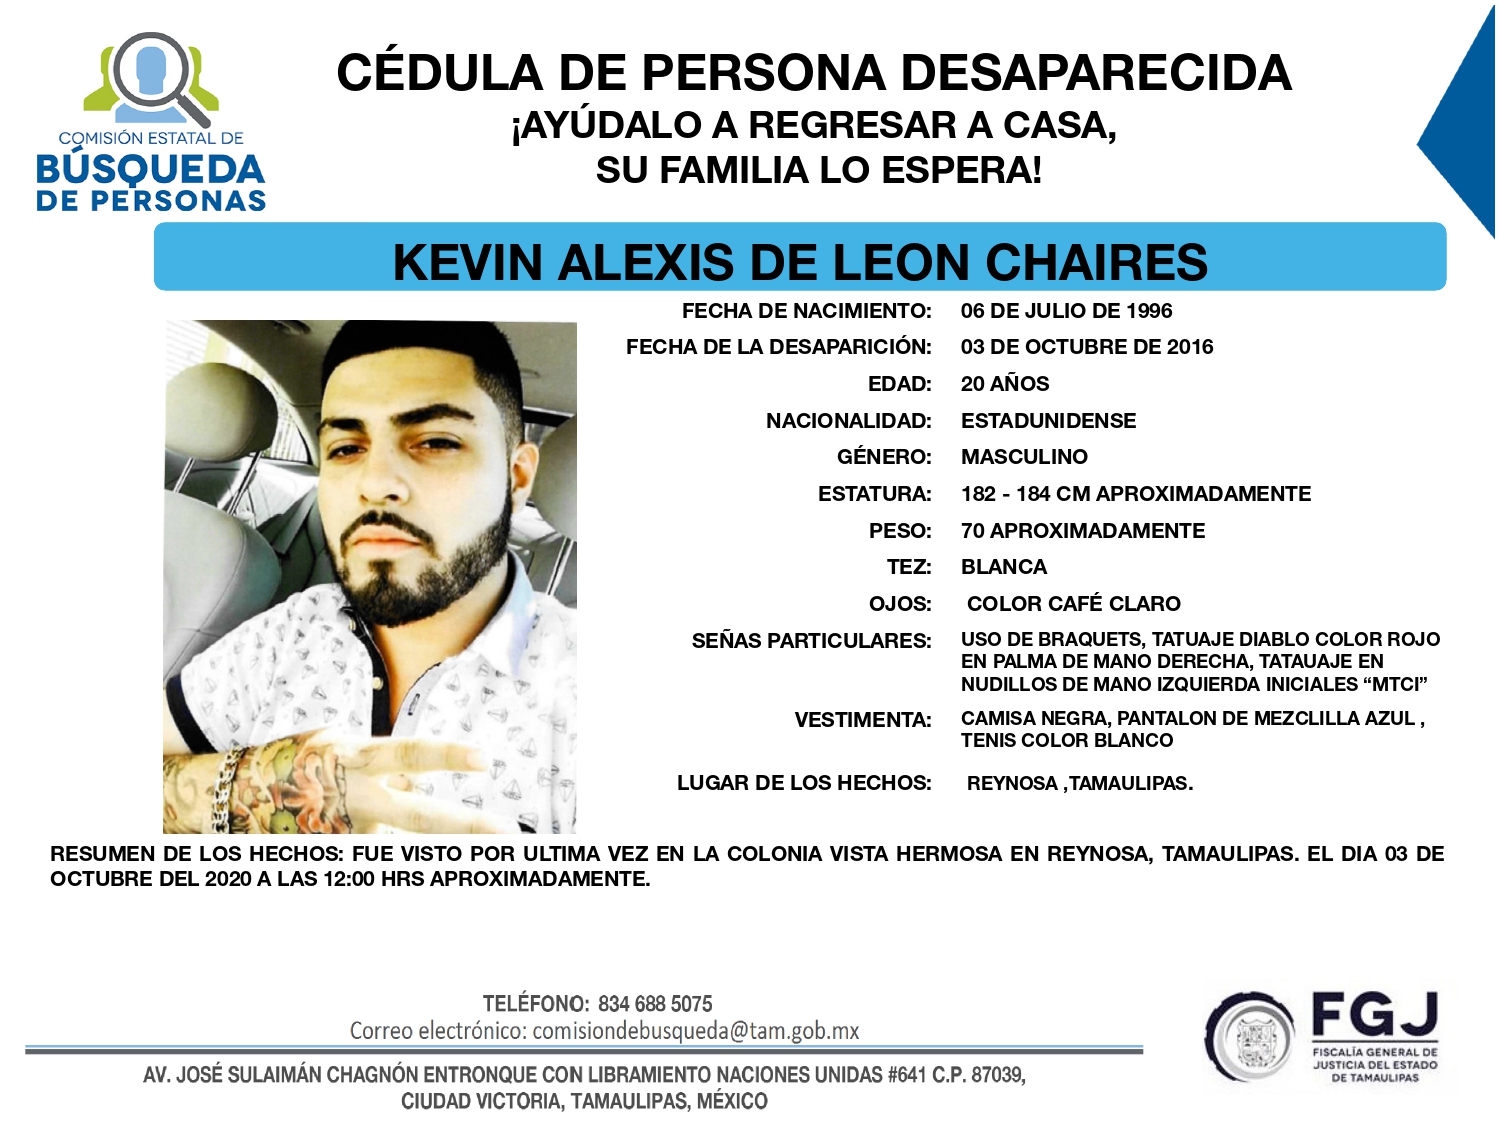 Kevin Alexis de León Chaires